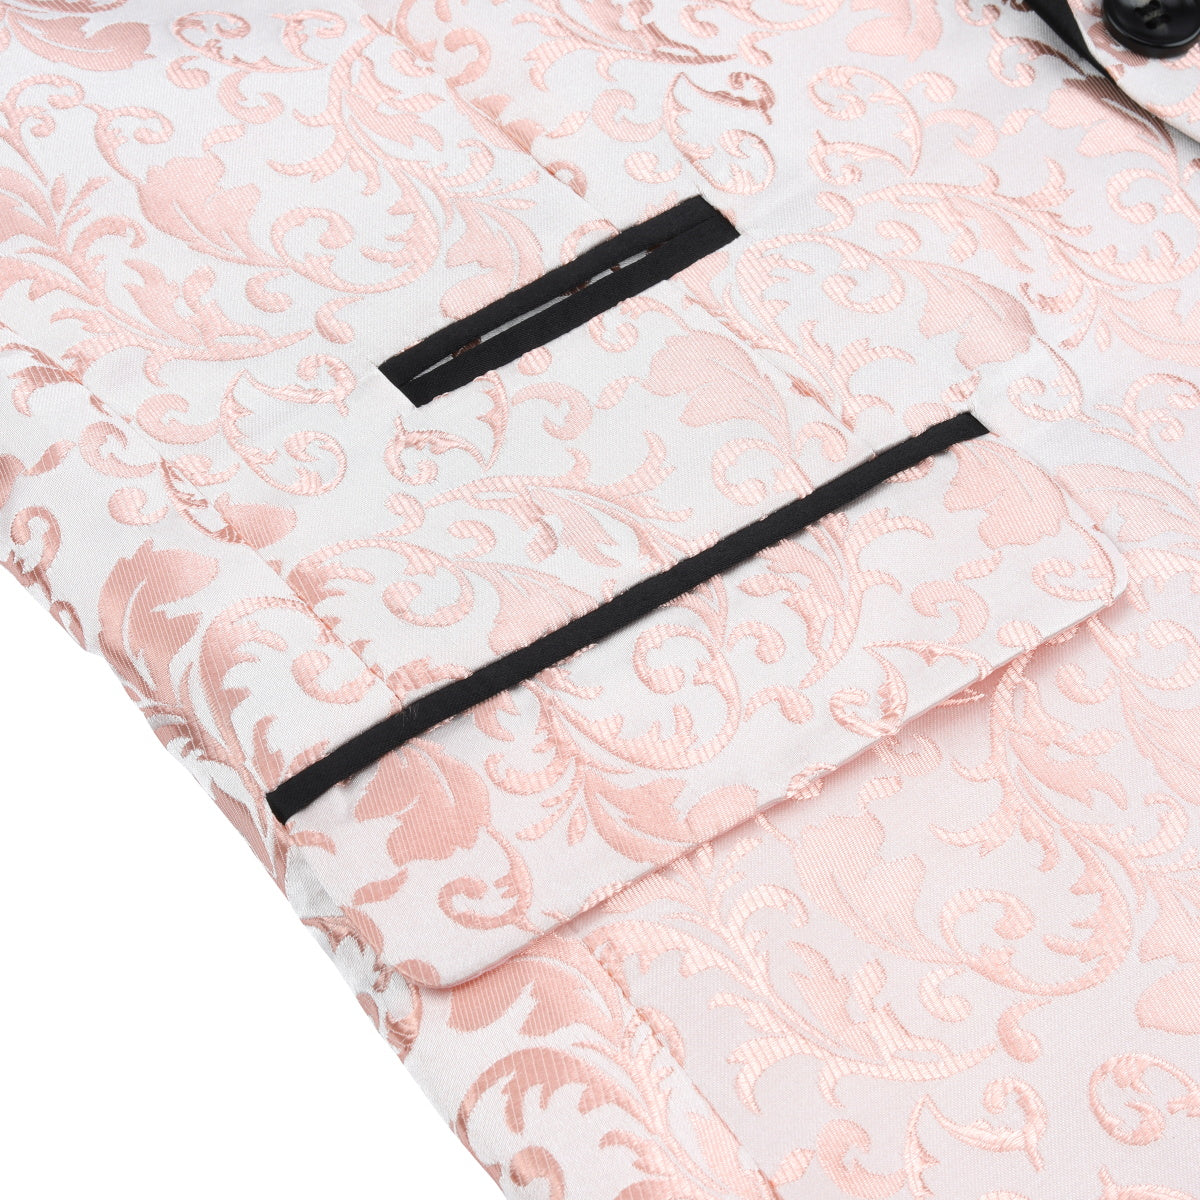 2-Piece Print Suit Slim Fit Paisley Pink Suit